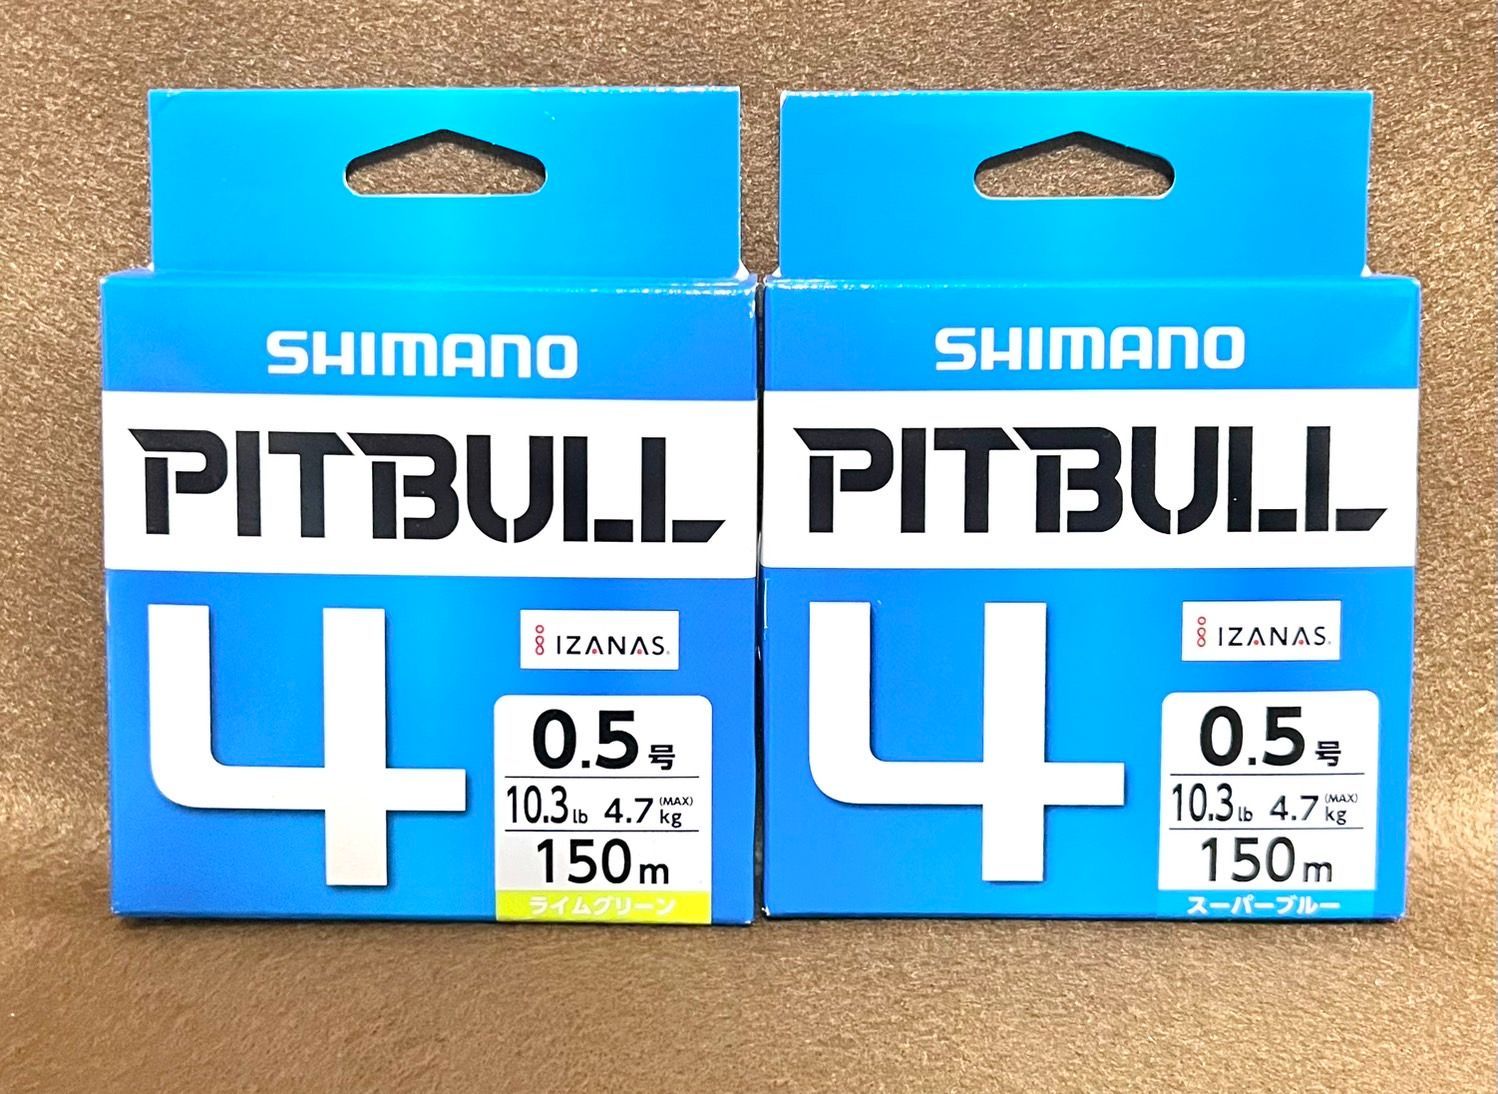 期間限定 シマノ ピットブル 0.4号 150m スーパーブルー 2個